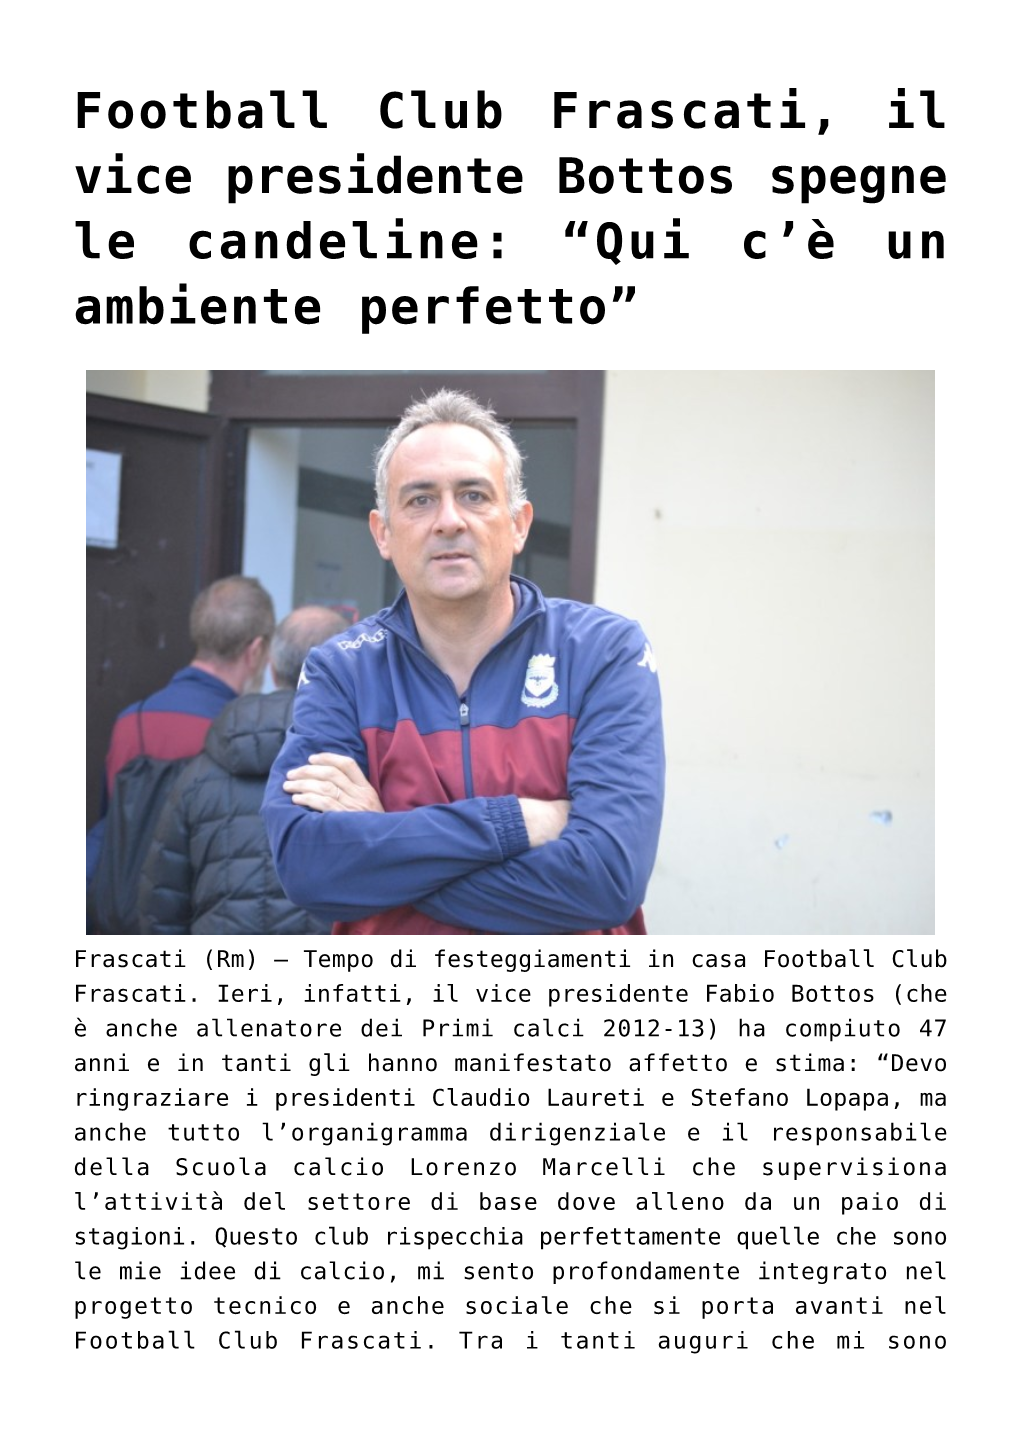 Football Club Frascati, Il Vice Presidente Bottos Spegne Le Candeline: “Qui C’È Un Ambiente Perfetto”